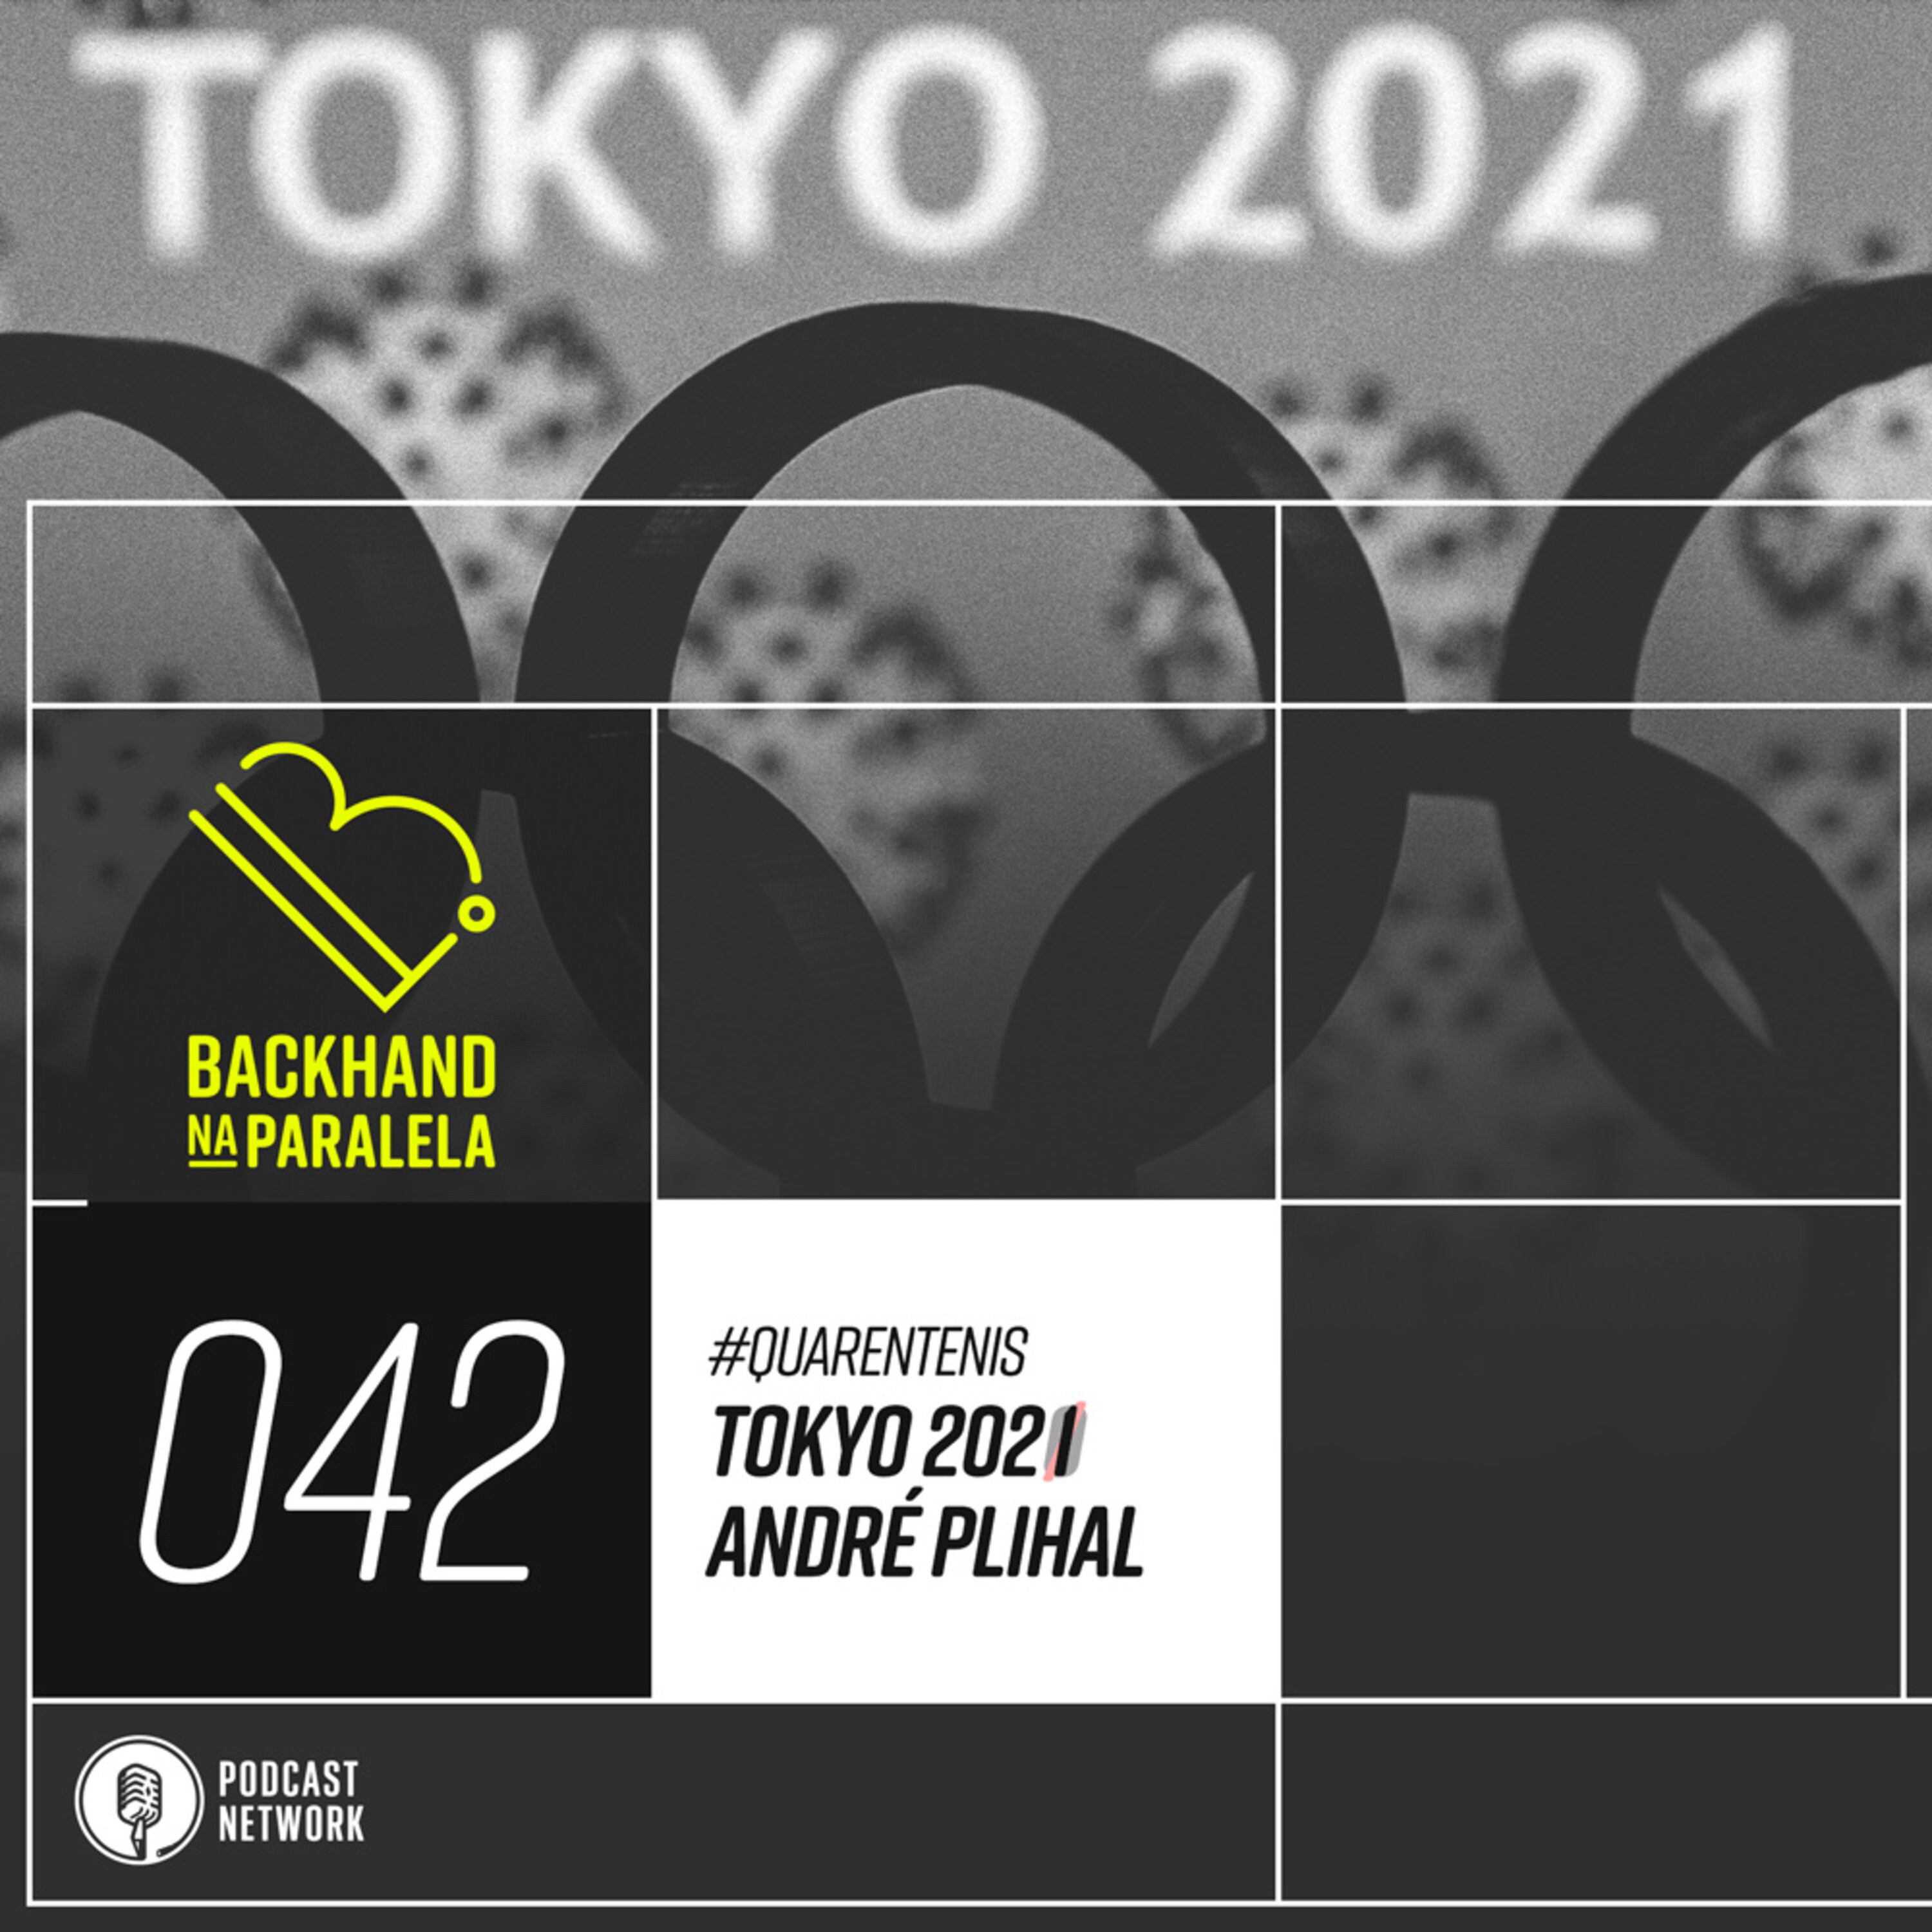 Backhand na Paralela 042 - Tokyo 2020/1 André Plihal - Quarentênis - #FiqueEmCasa